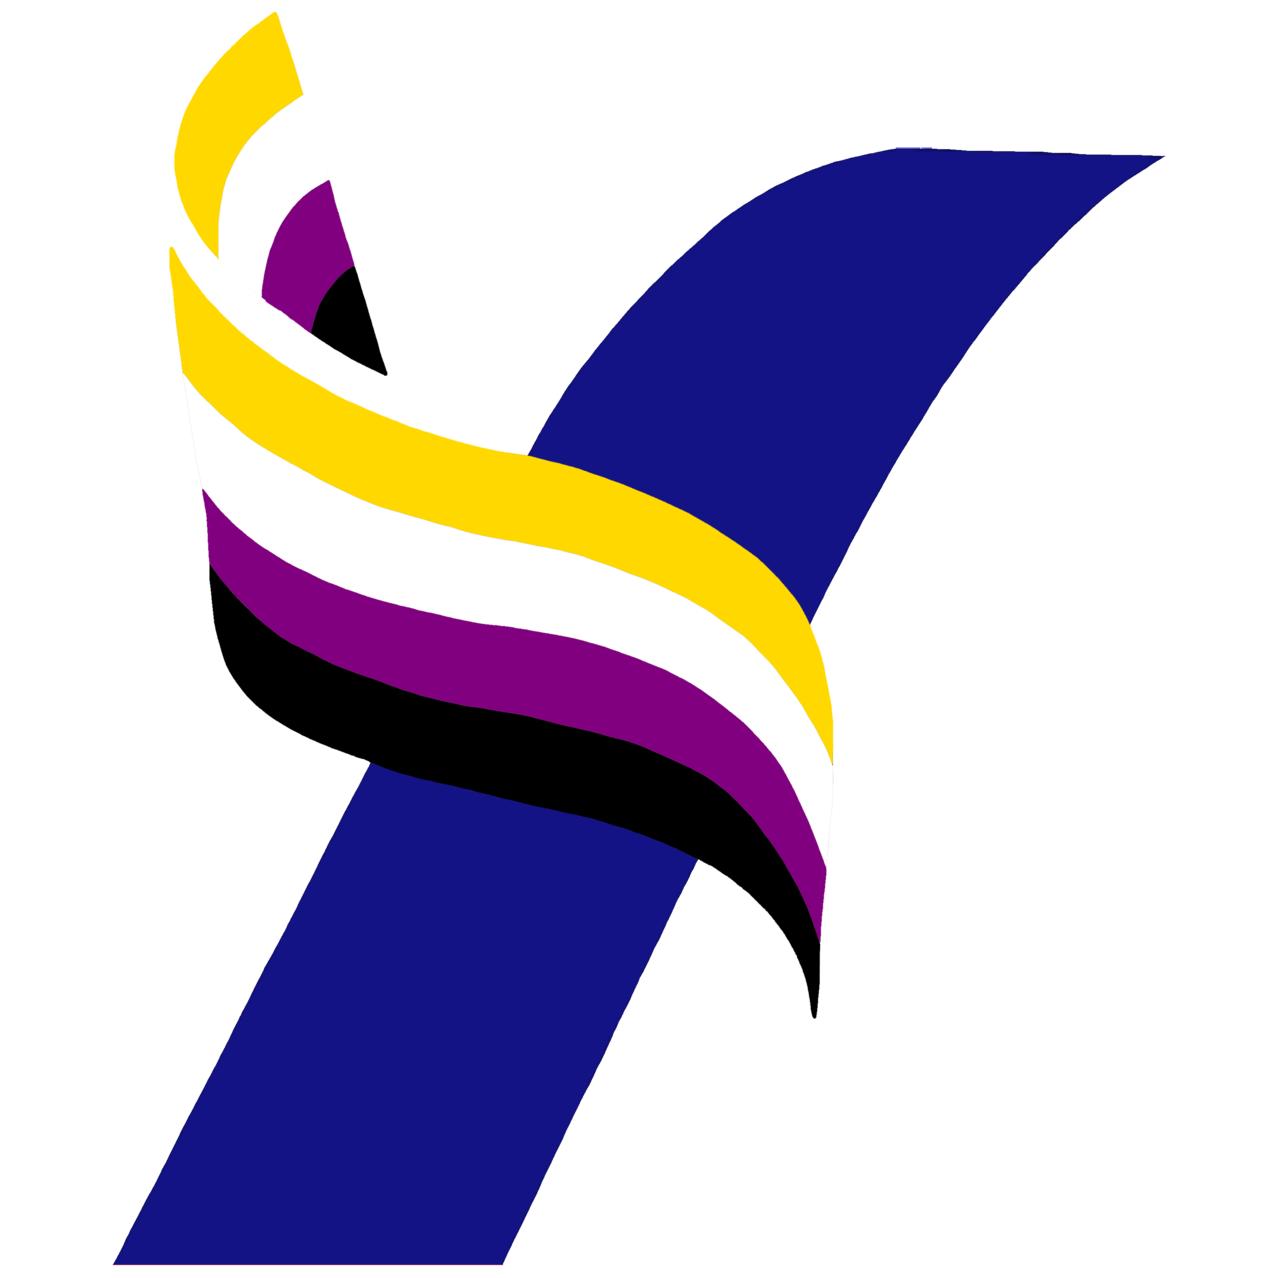 Yang2020 Official — Yang Pride Logo Set1280 x 1278